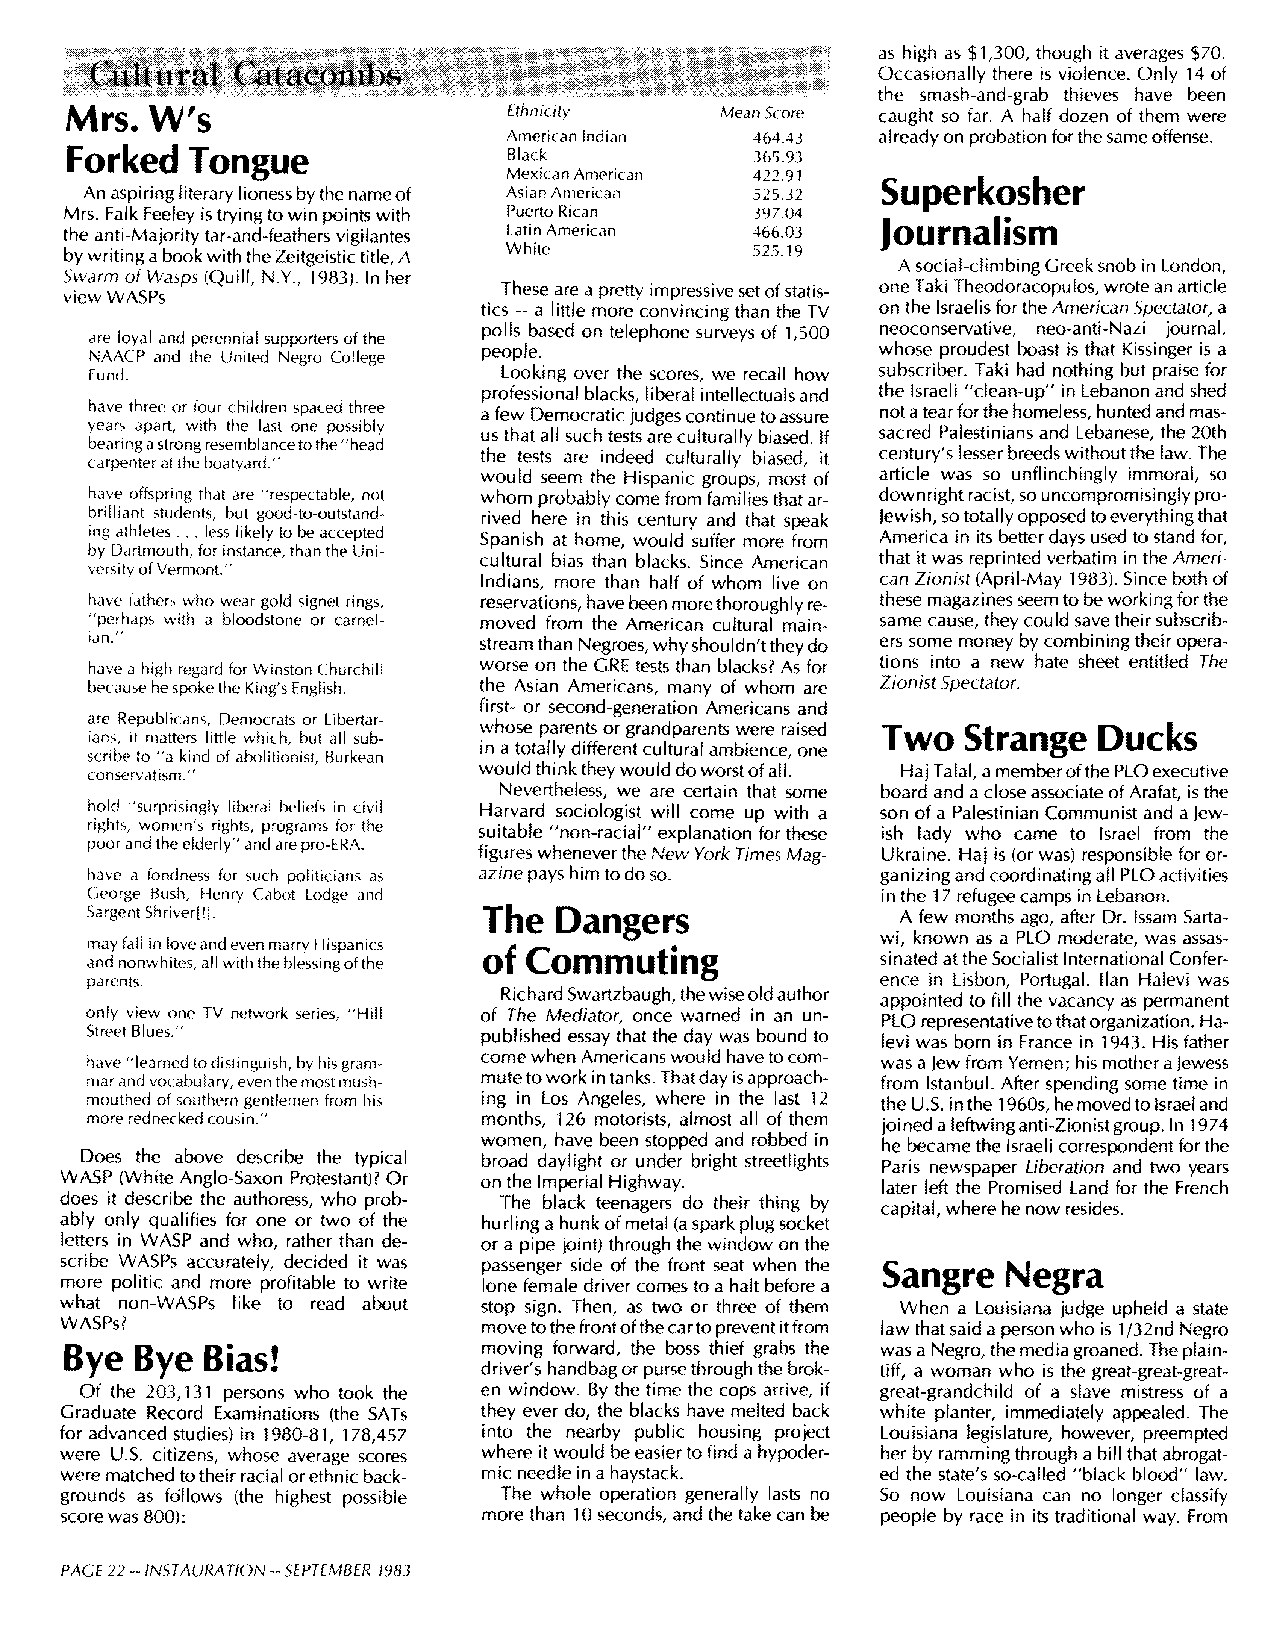 Instauration-1983-09-September-Vol8-No10-pt2